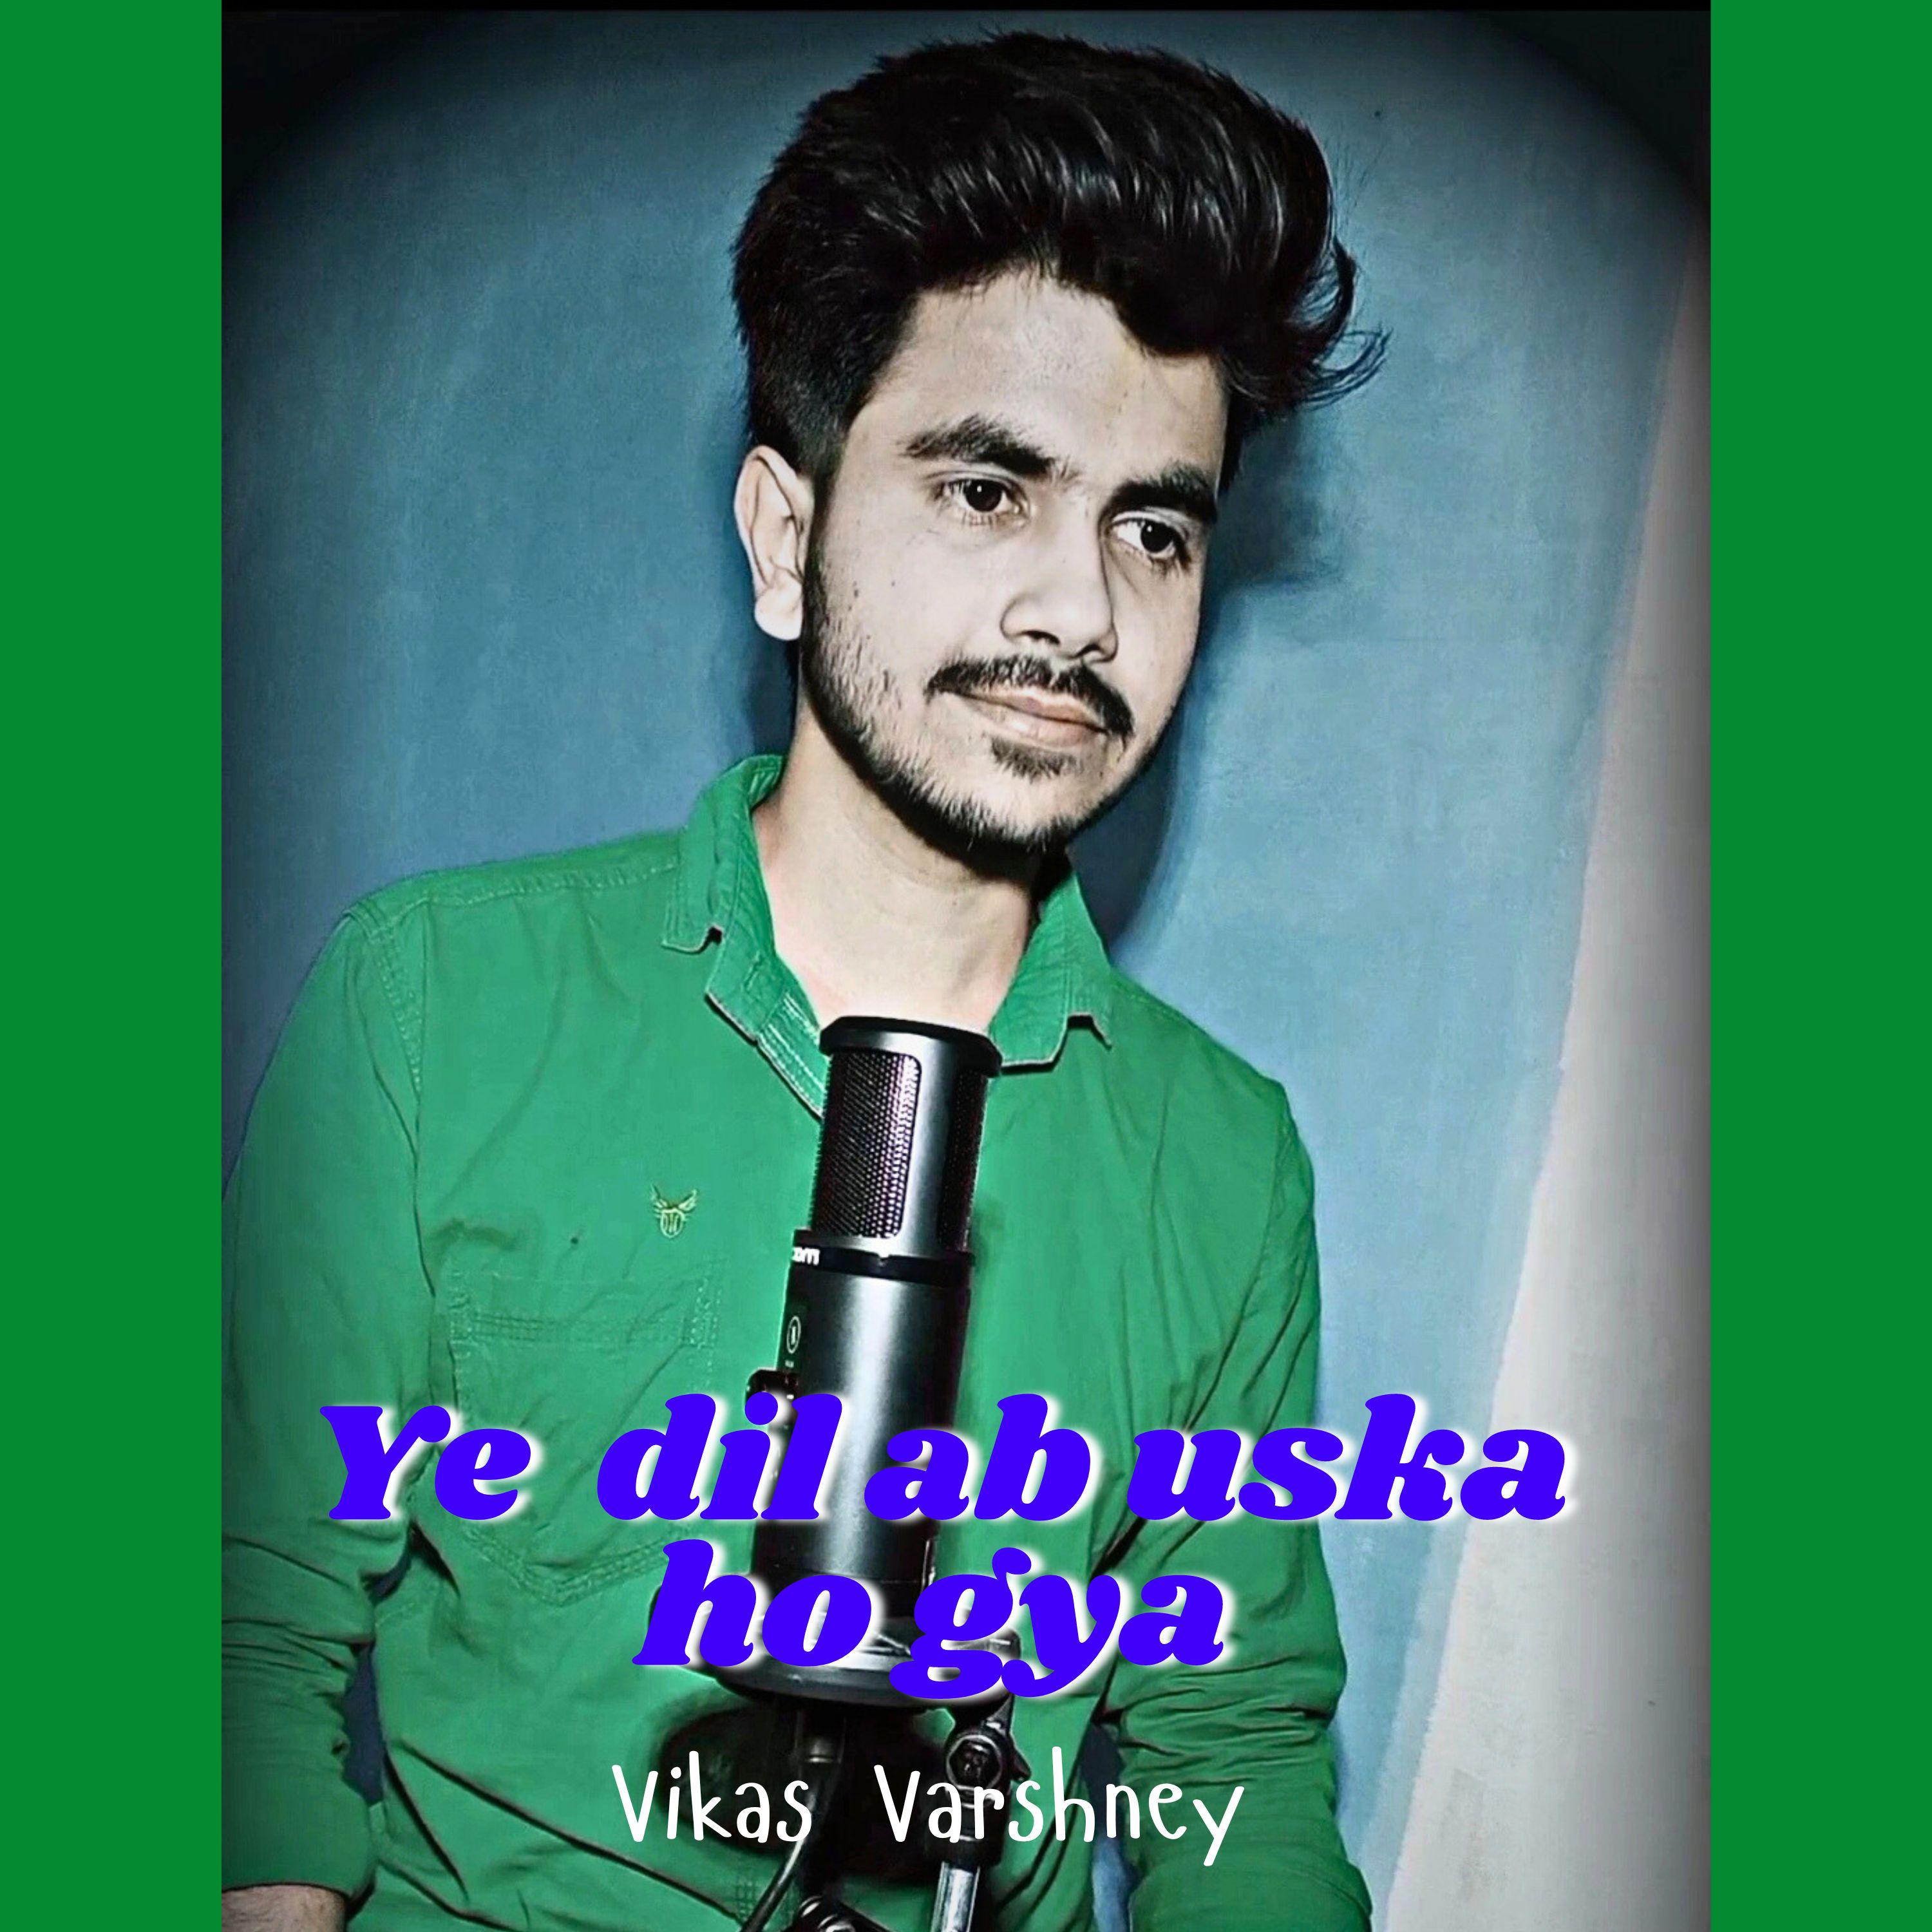 Vikas Varshney - Ye Dil Ab Uska Ho Gaya